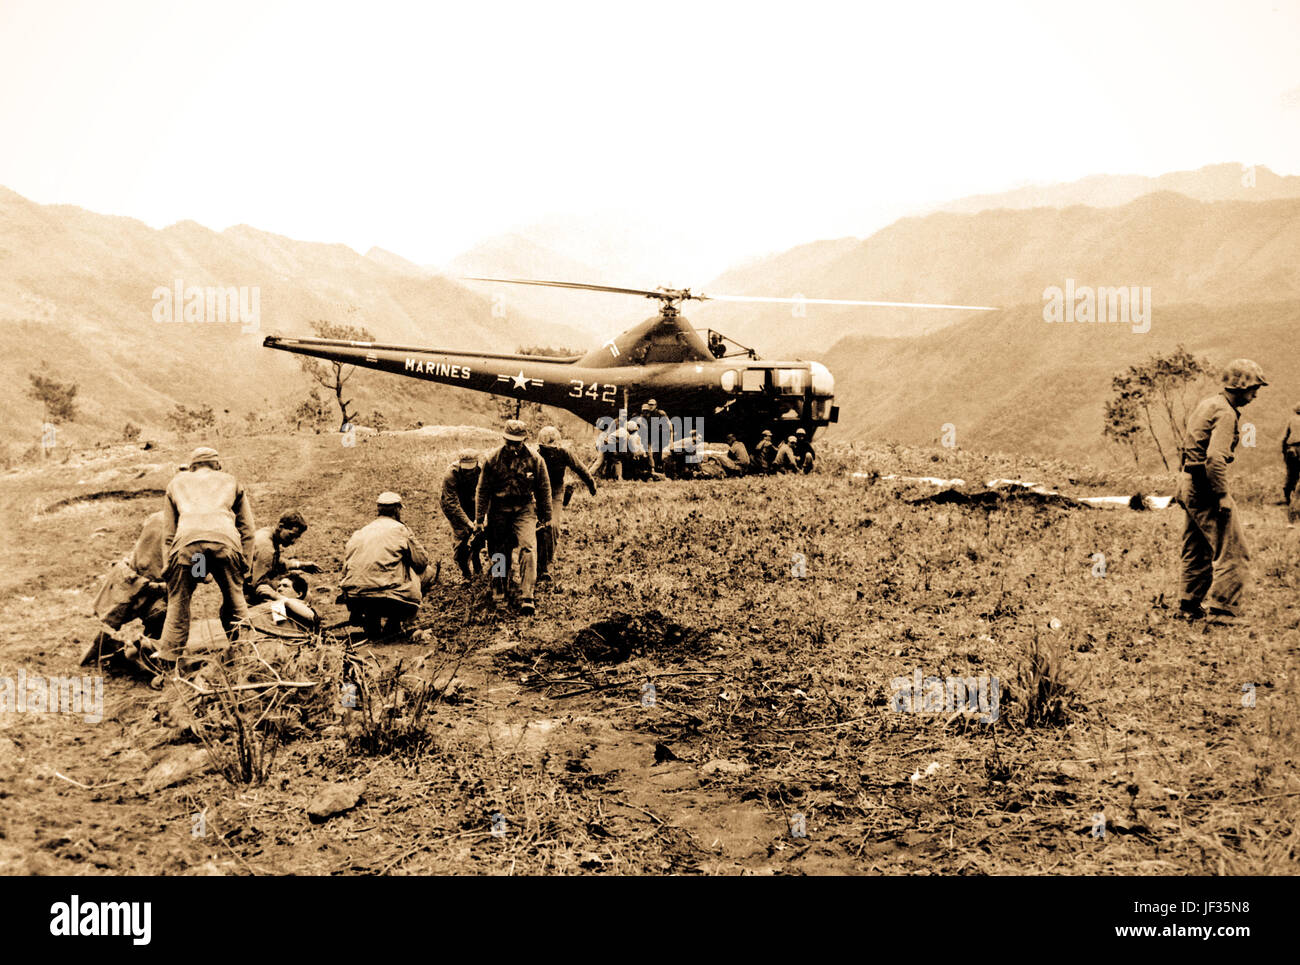 US-Marines bei Kari San Mountain verwundet sind per Hubschrauber evakuiert und in in der Nähe von Gebieten zur Behandlung ins Krankenhaus geflogen.  Marine Sanitätern bereiten drei verwundete Marines für die Evakuierung.  23. Mai 1951.  Foto von N.H. McMasters.  (Marine) Stockfoto